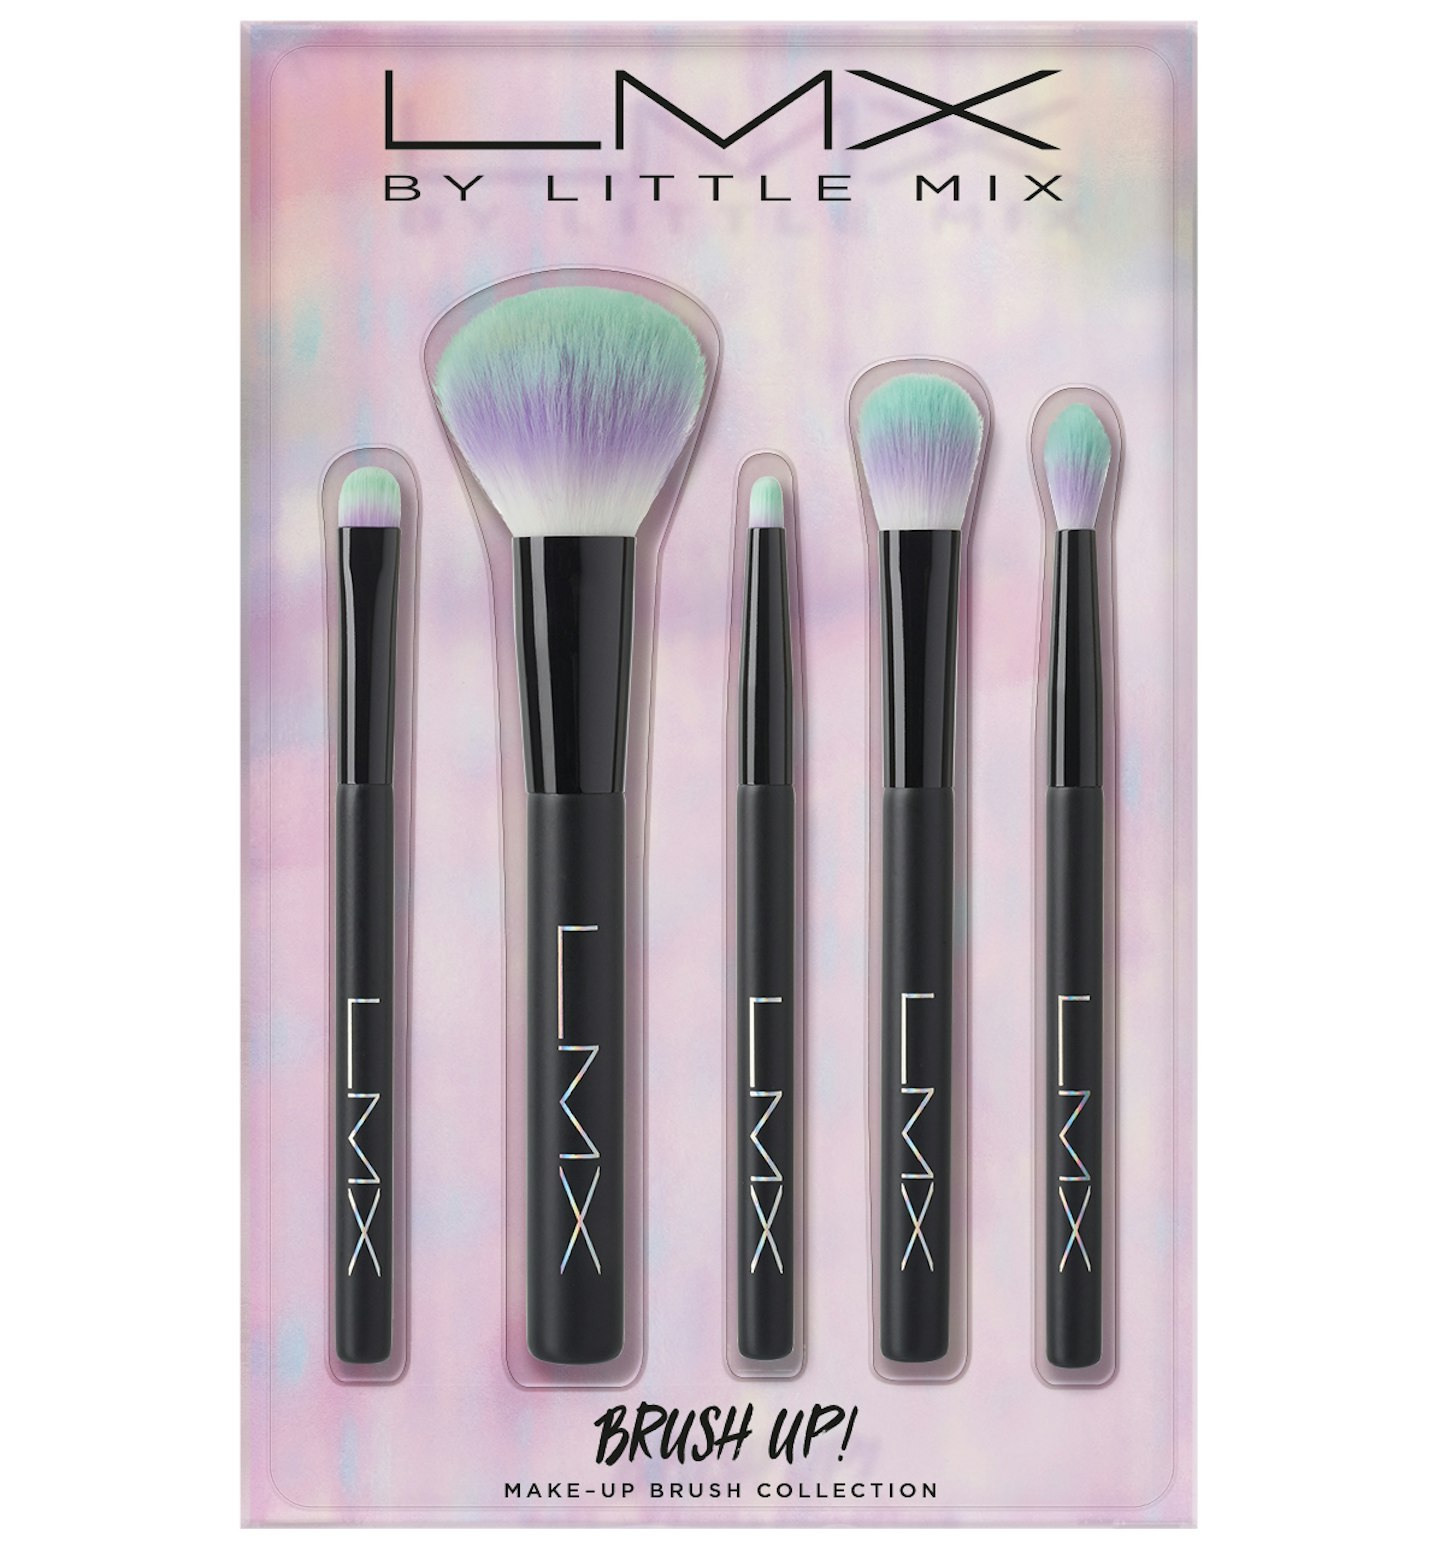 LMX makeup